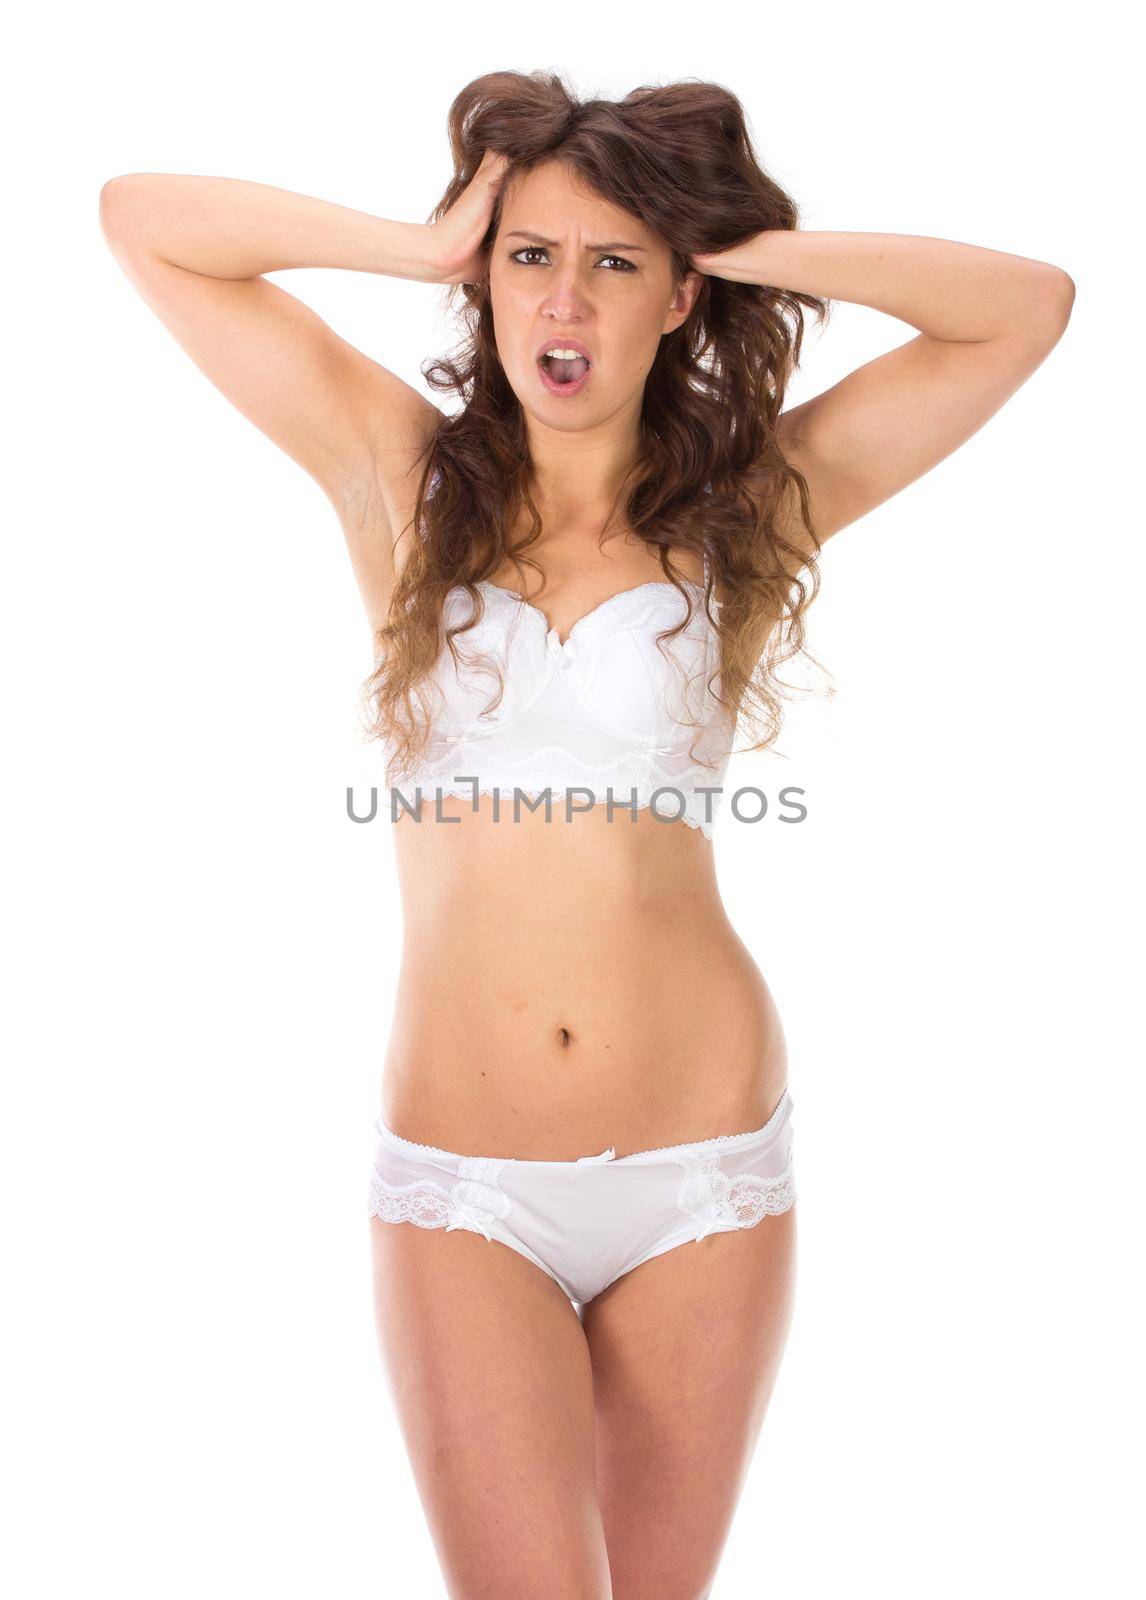 Beautiful slim body of woman in lingerie by gsdonlin